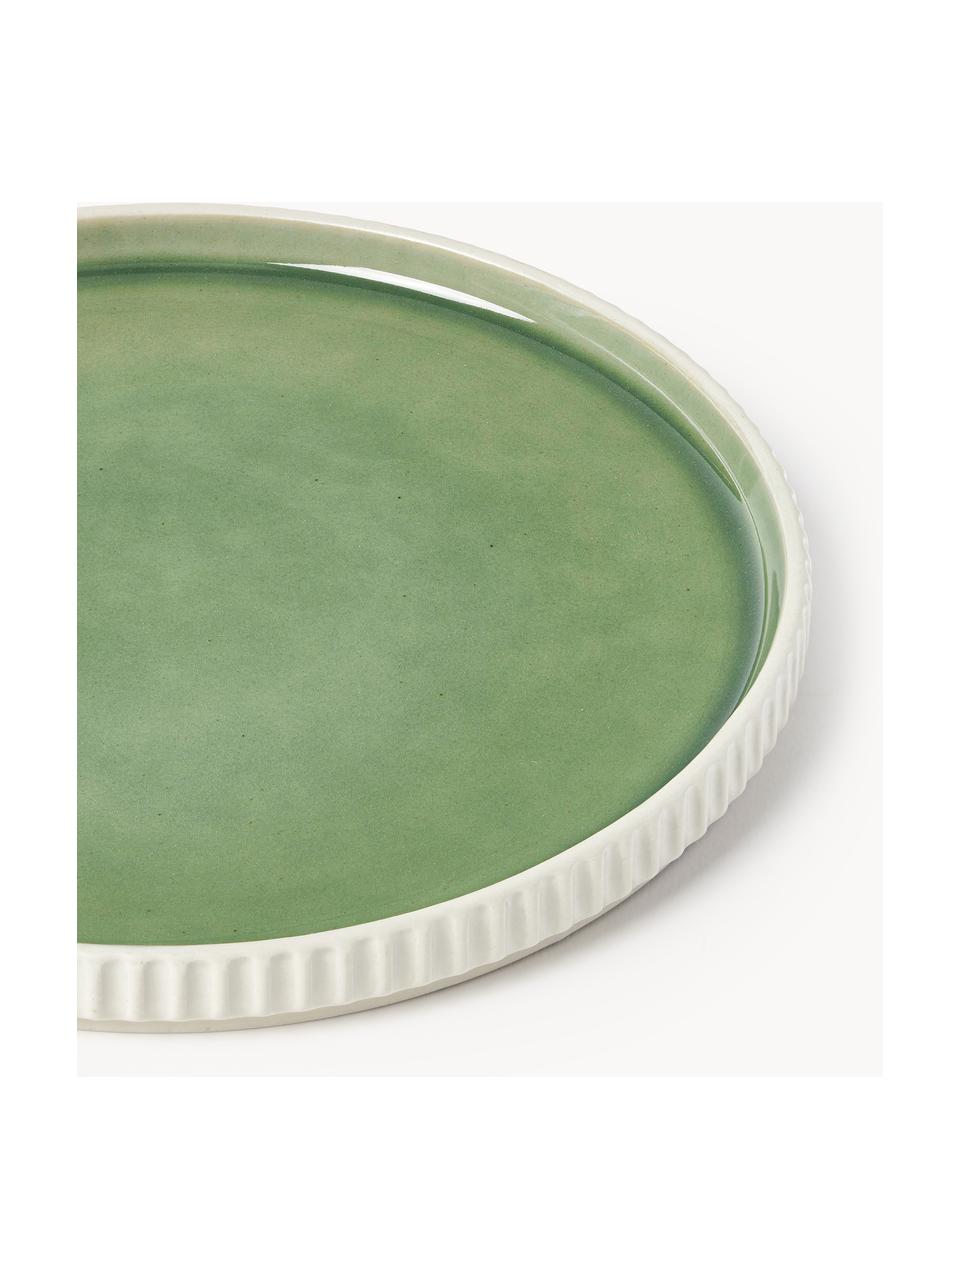 Snídaňové talíře Bora, 4 ks, Glazovaná kamenina, Světle zelená, světle béžová, Ø 21 cm